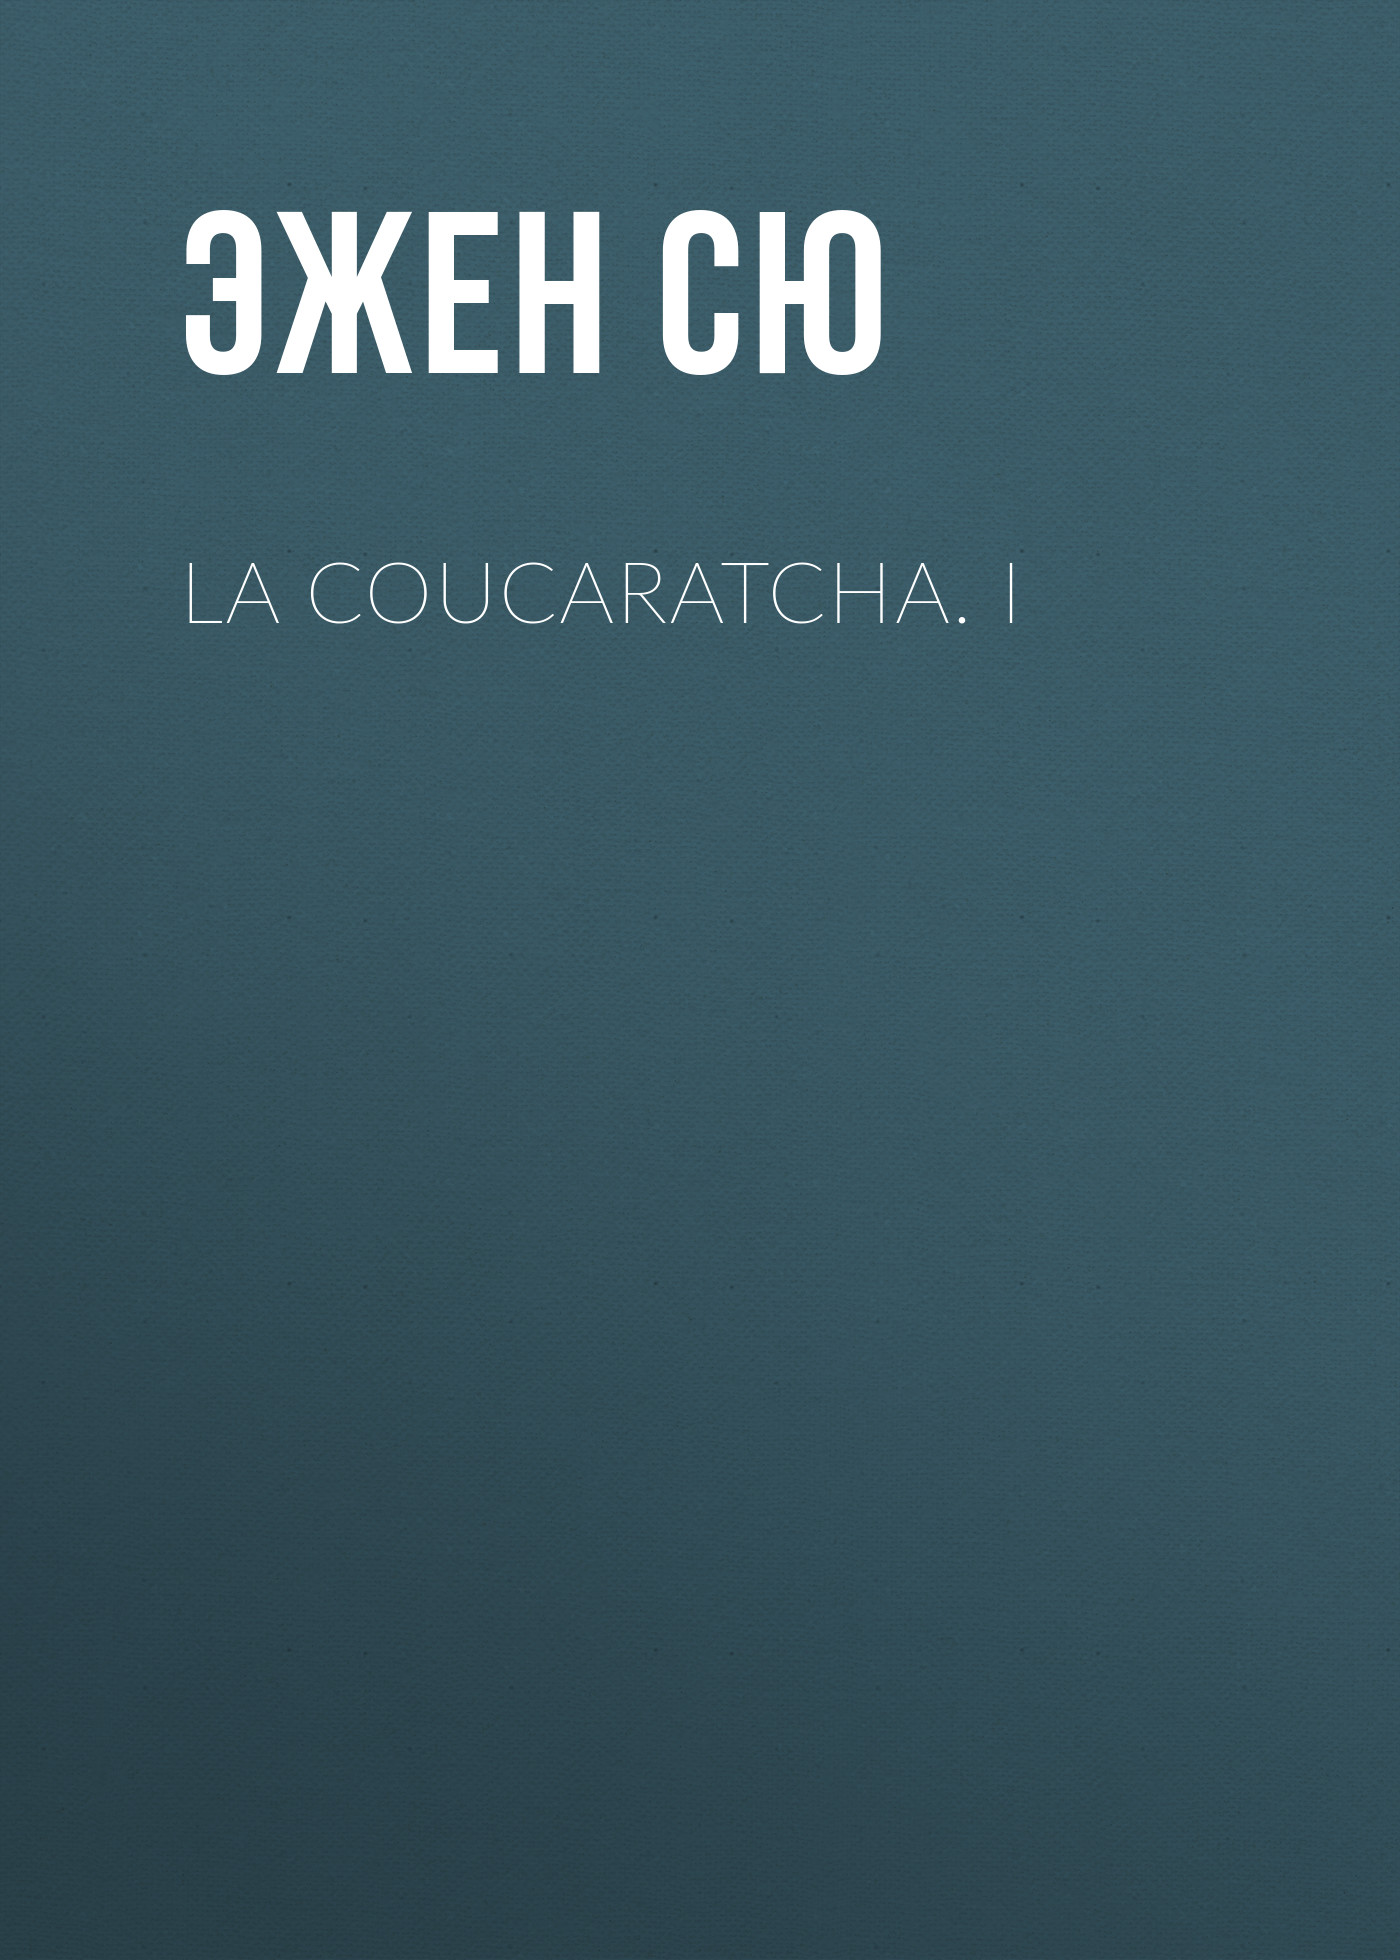 Книга La coucaratcha. I из серии , созданная Эжен Сю, может относится к жанру Литература 19 века, Зарубежная старинная литература, Зарубежная классика. Стоимость электронной книги La coucaratcha. I с идентификатором 25476823 составляет 0 руб.